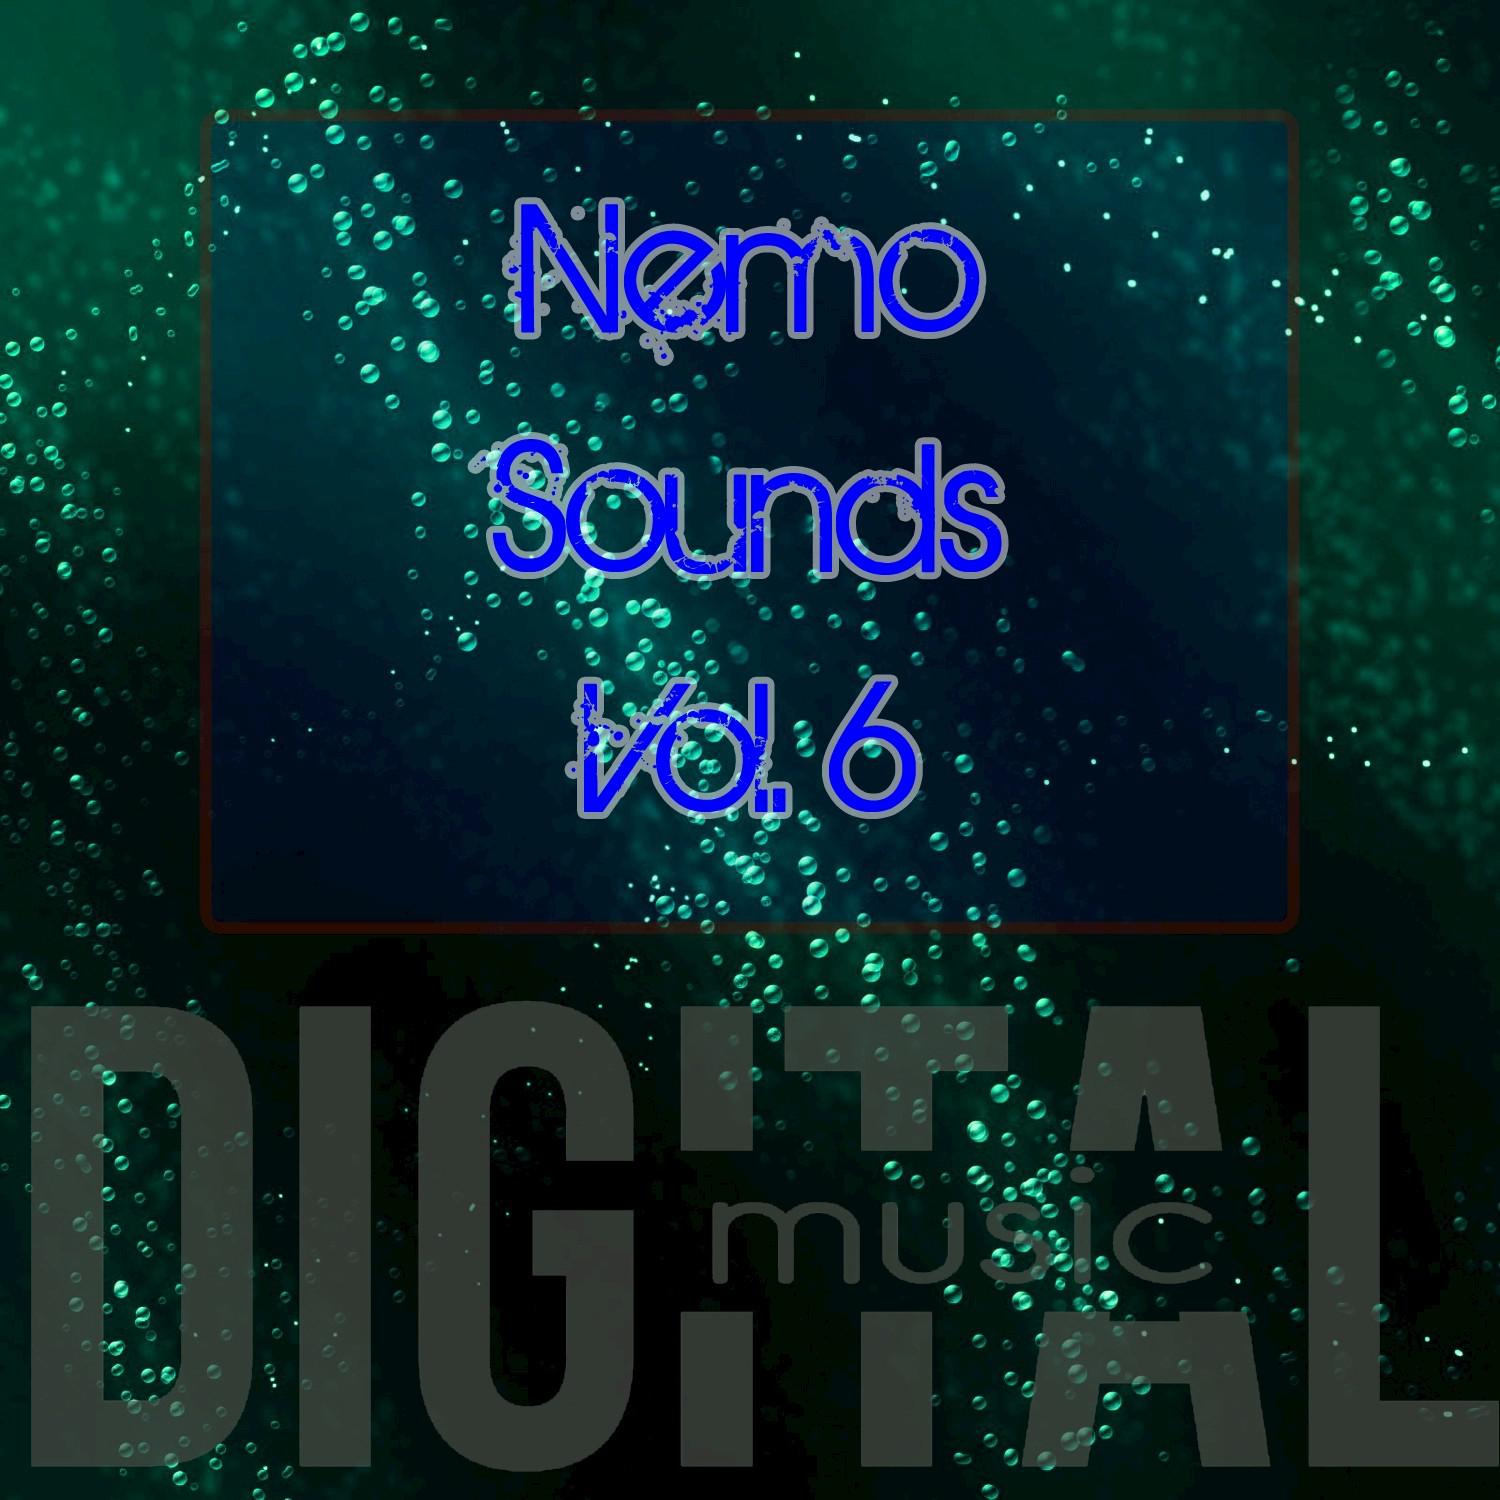 Nemo Sounds, Vol. 6